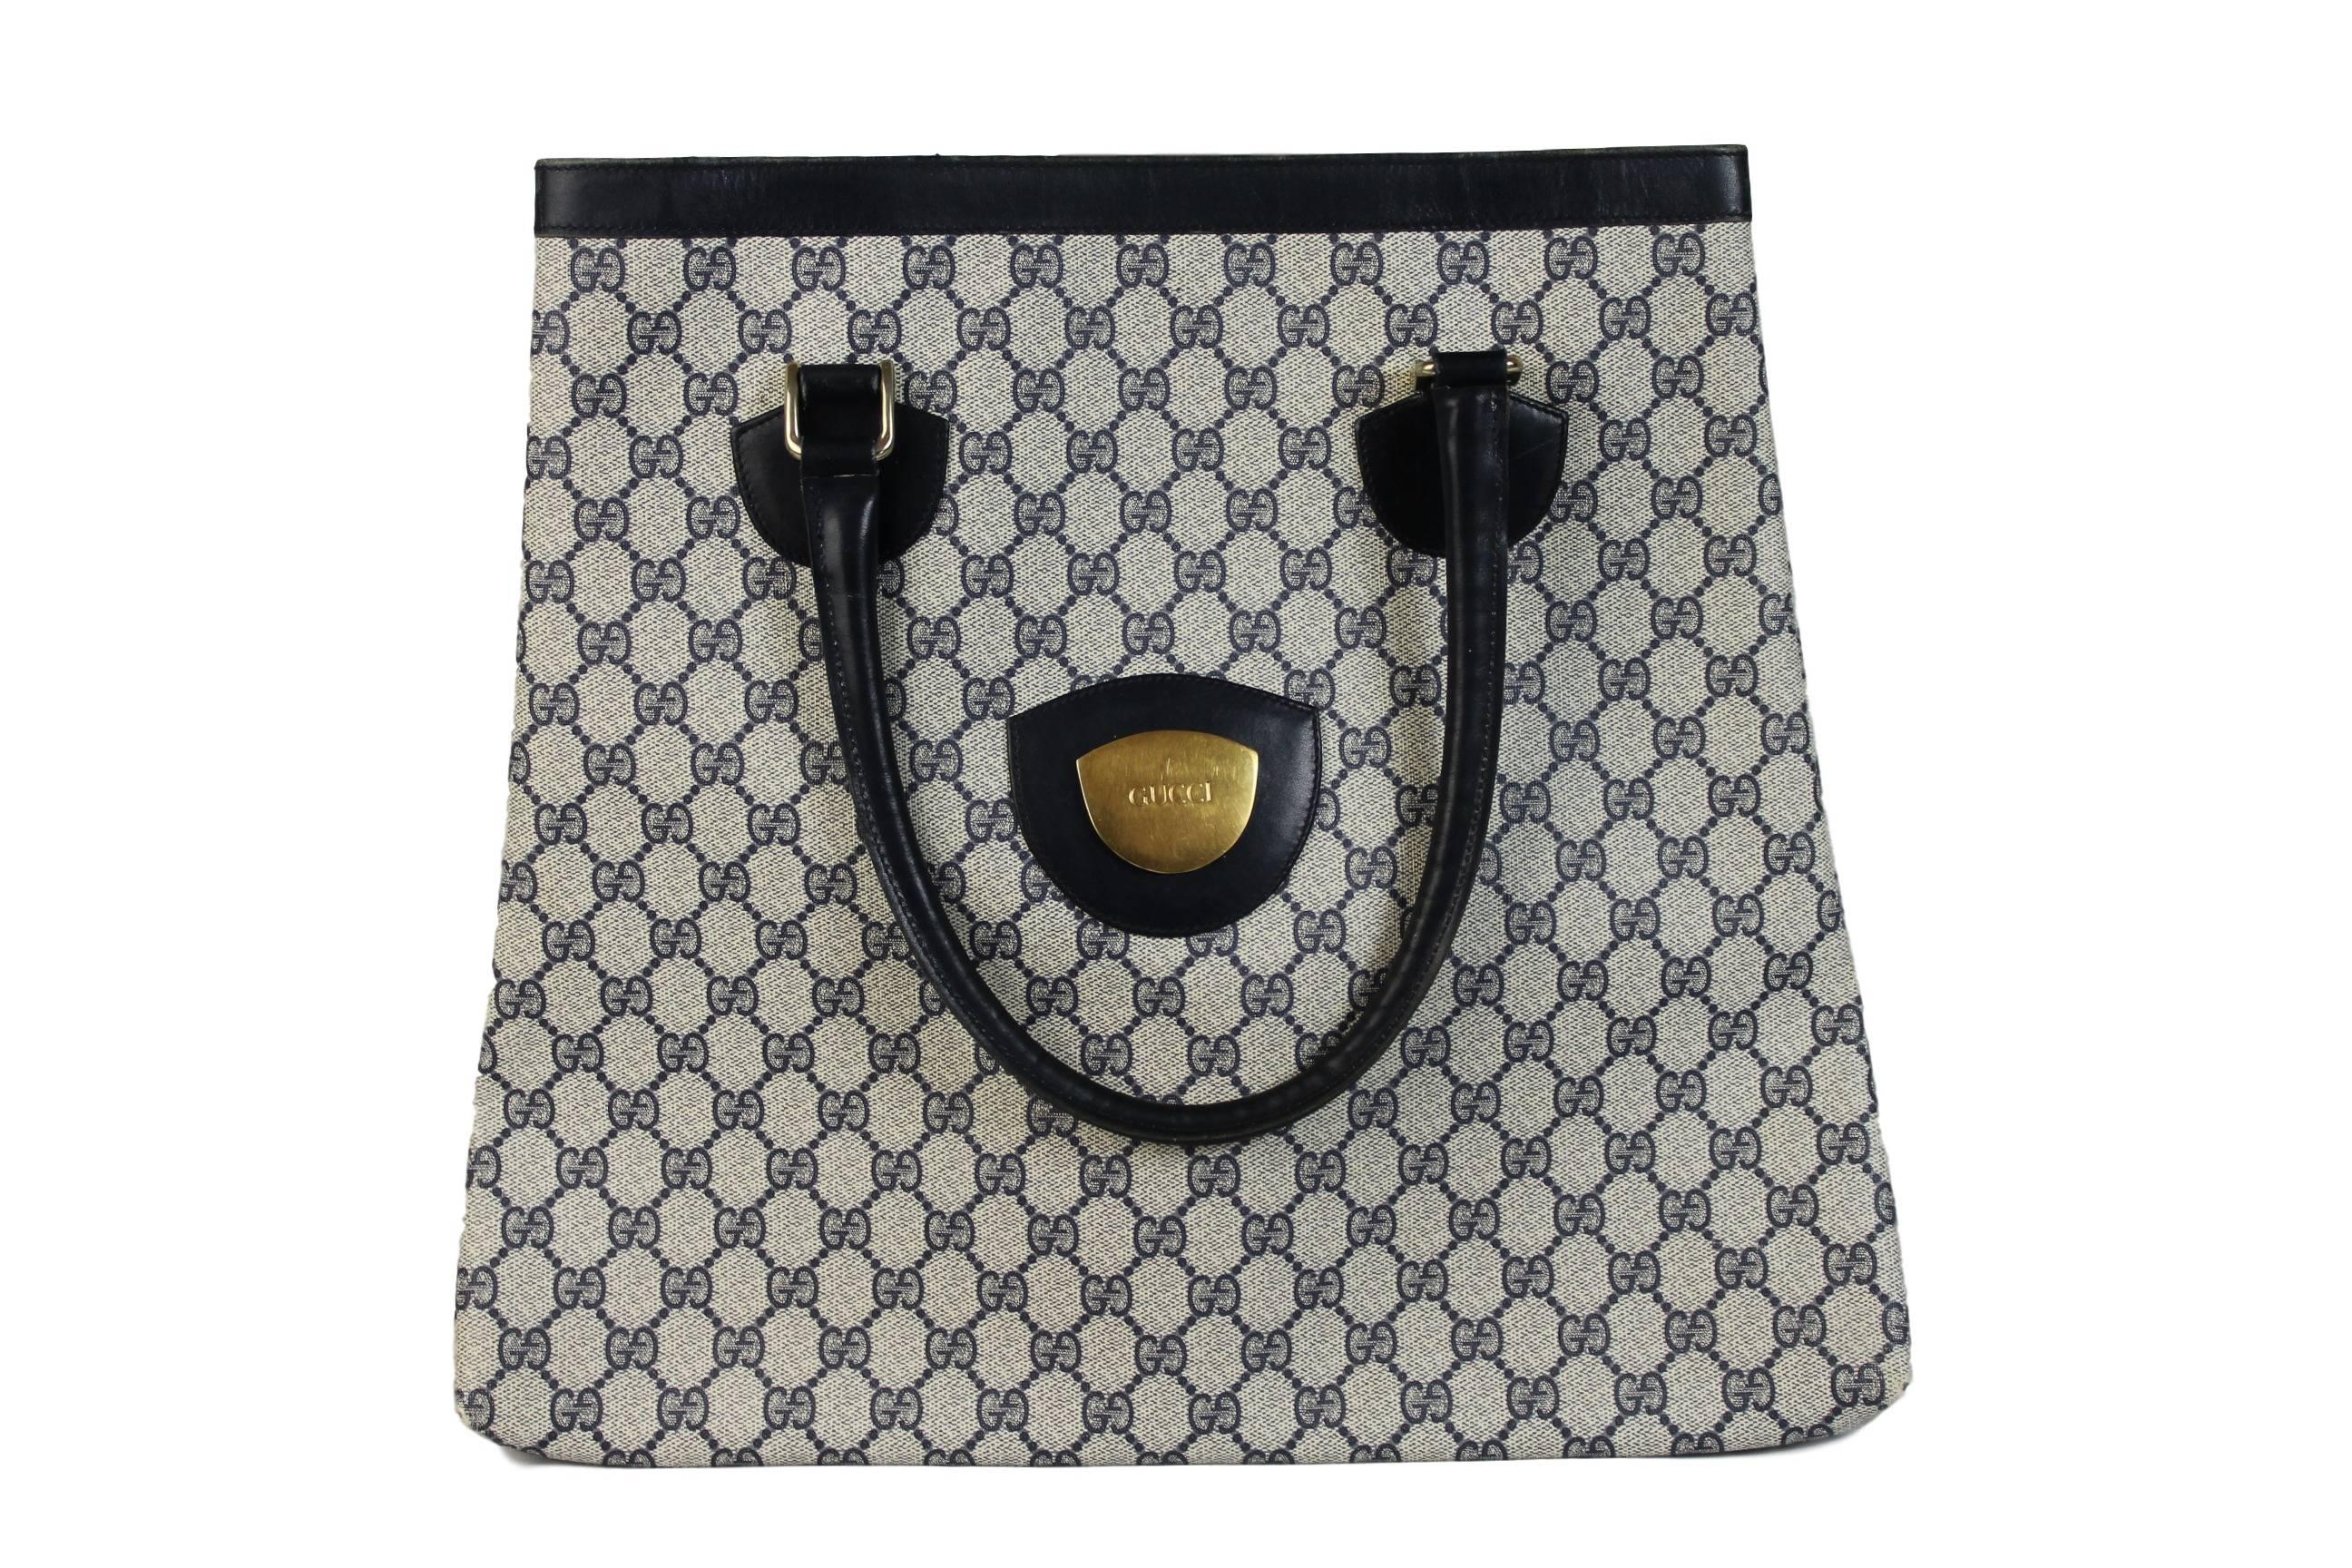 Gucci shopper handbag leather monogram, blue color, gold logo, it has original cotton case. 

Measure:
height: 40 cm
length: 36 cm
width: 3 cm

Color: blue
Condition: good